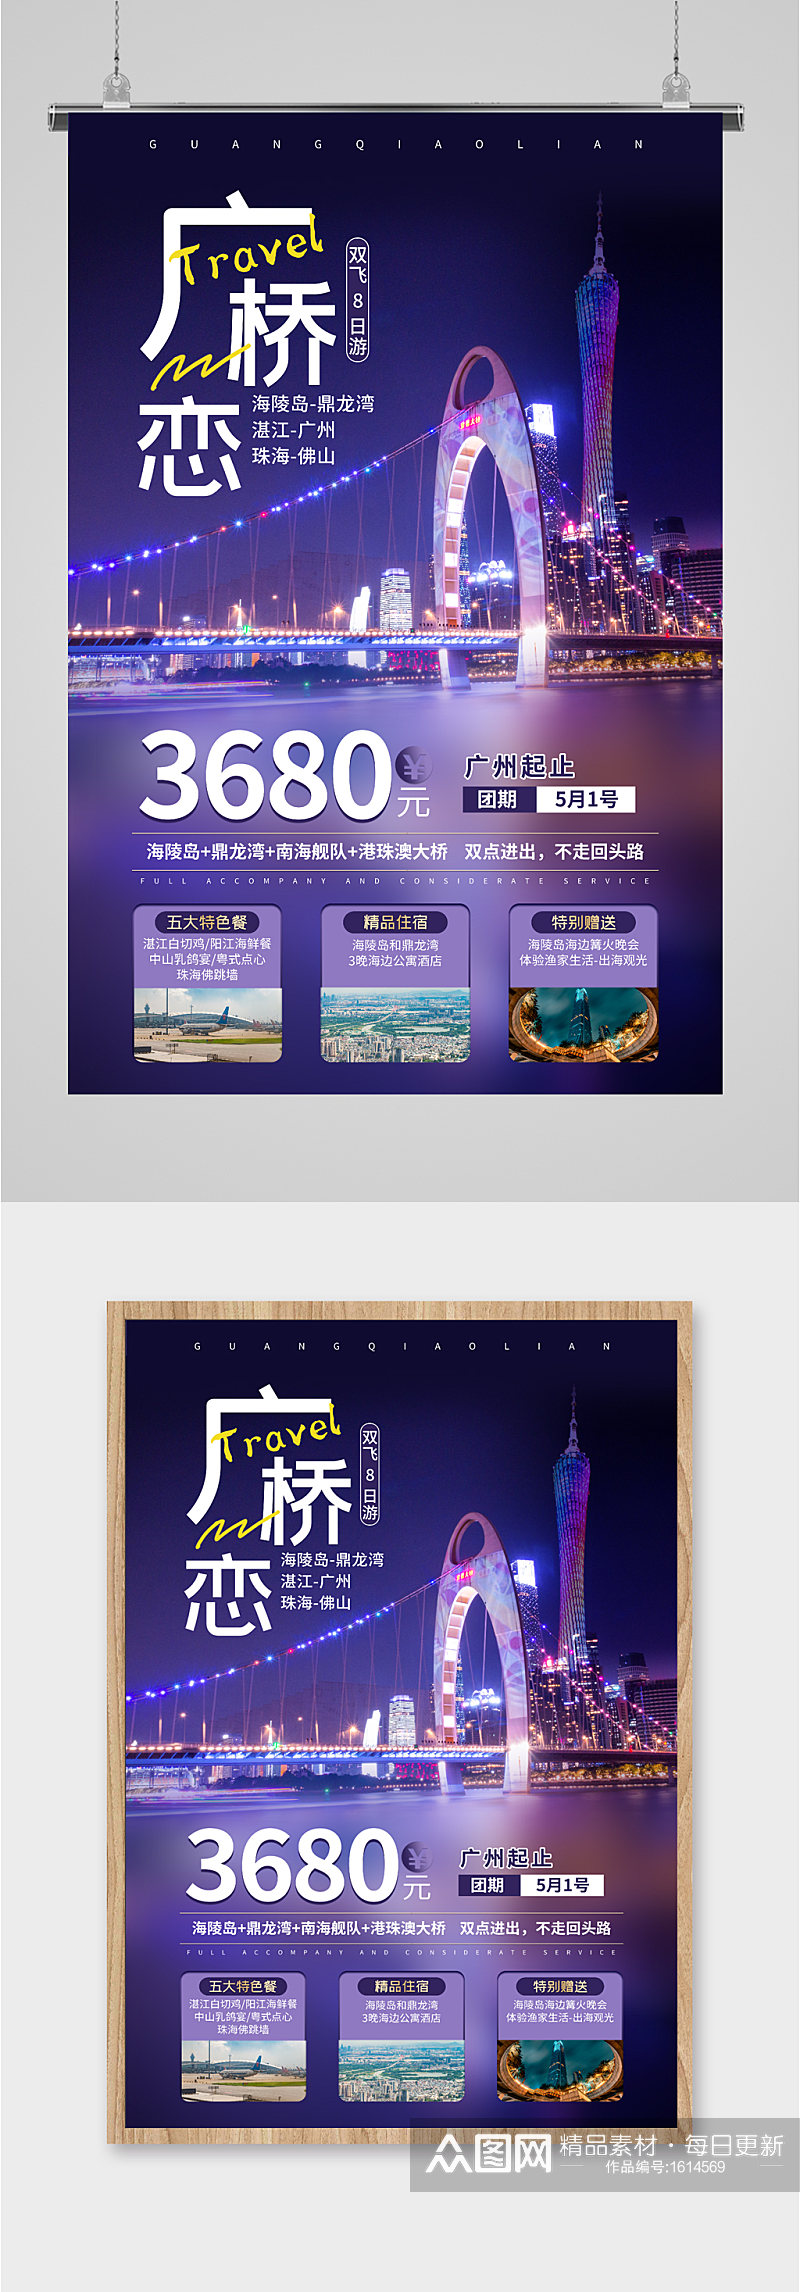 广桥恋旅游优惠活动海报素材